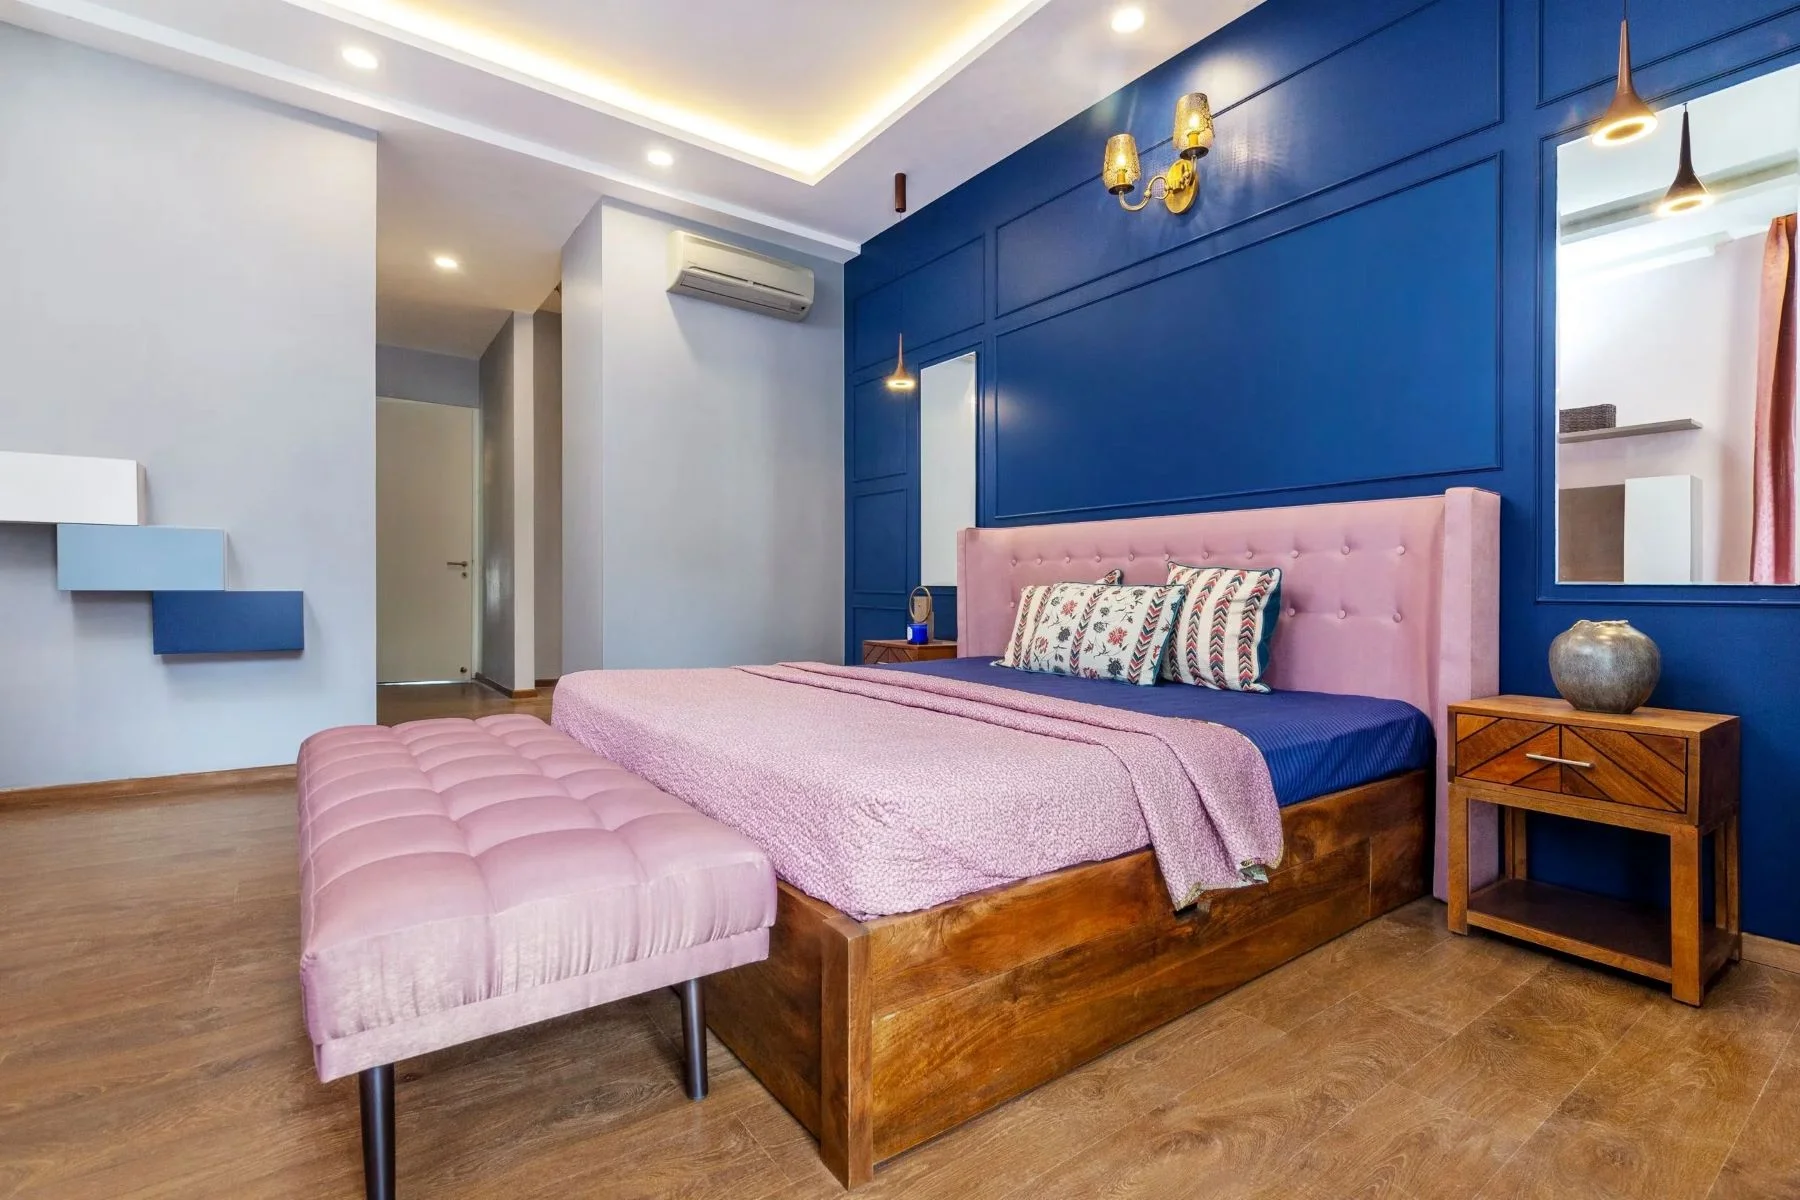 Giường nhập buồng nghỉ rất đẹp màu sắc hồng